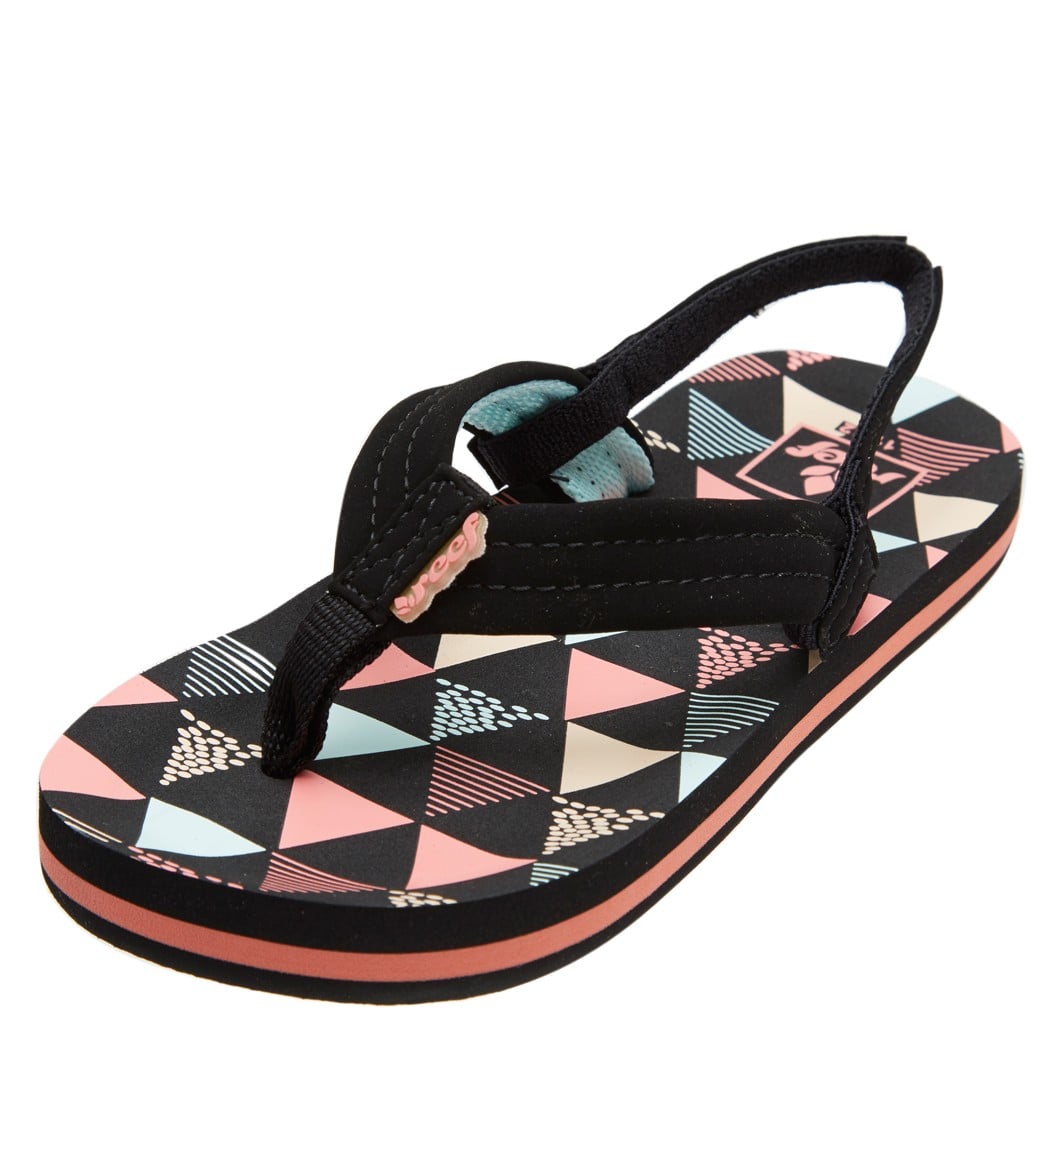 reef girls sandals